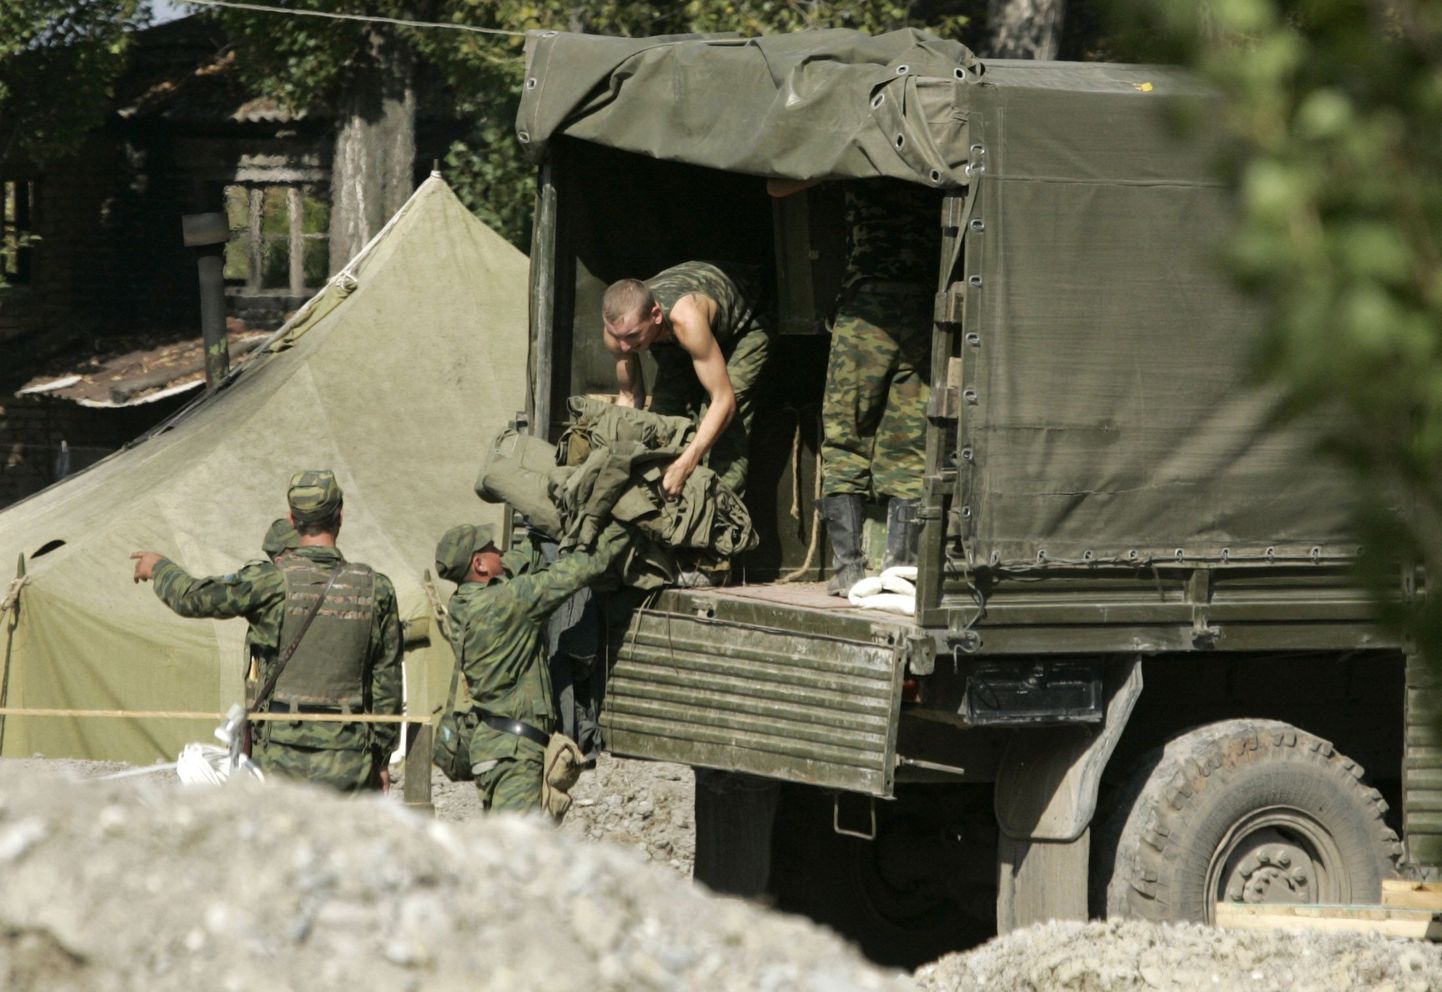 Vene sõjaväelased tegemas ettevalmistusi kontrollpunktidest lahkumiseks.